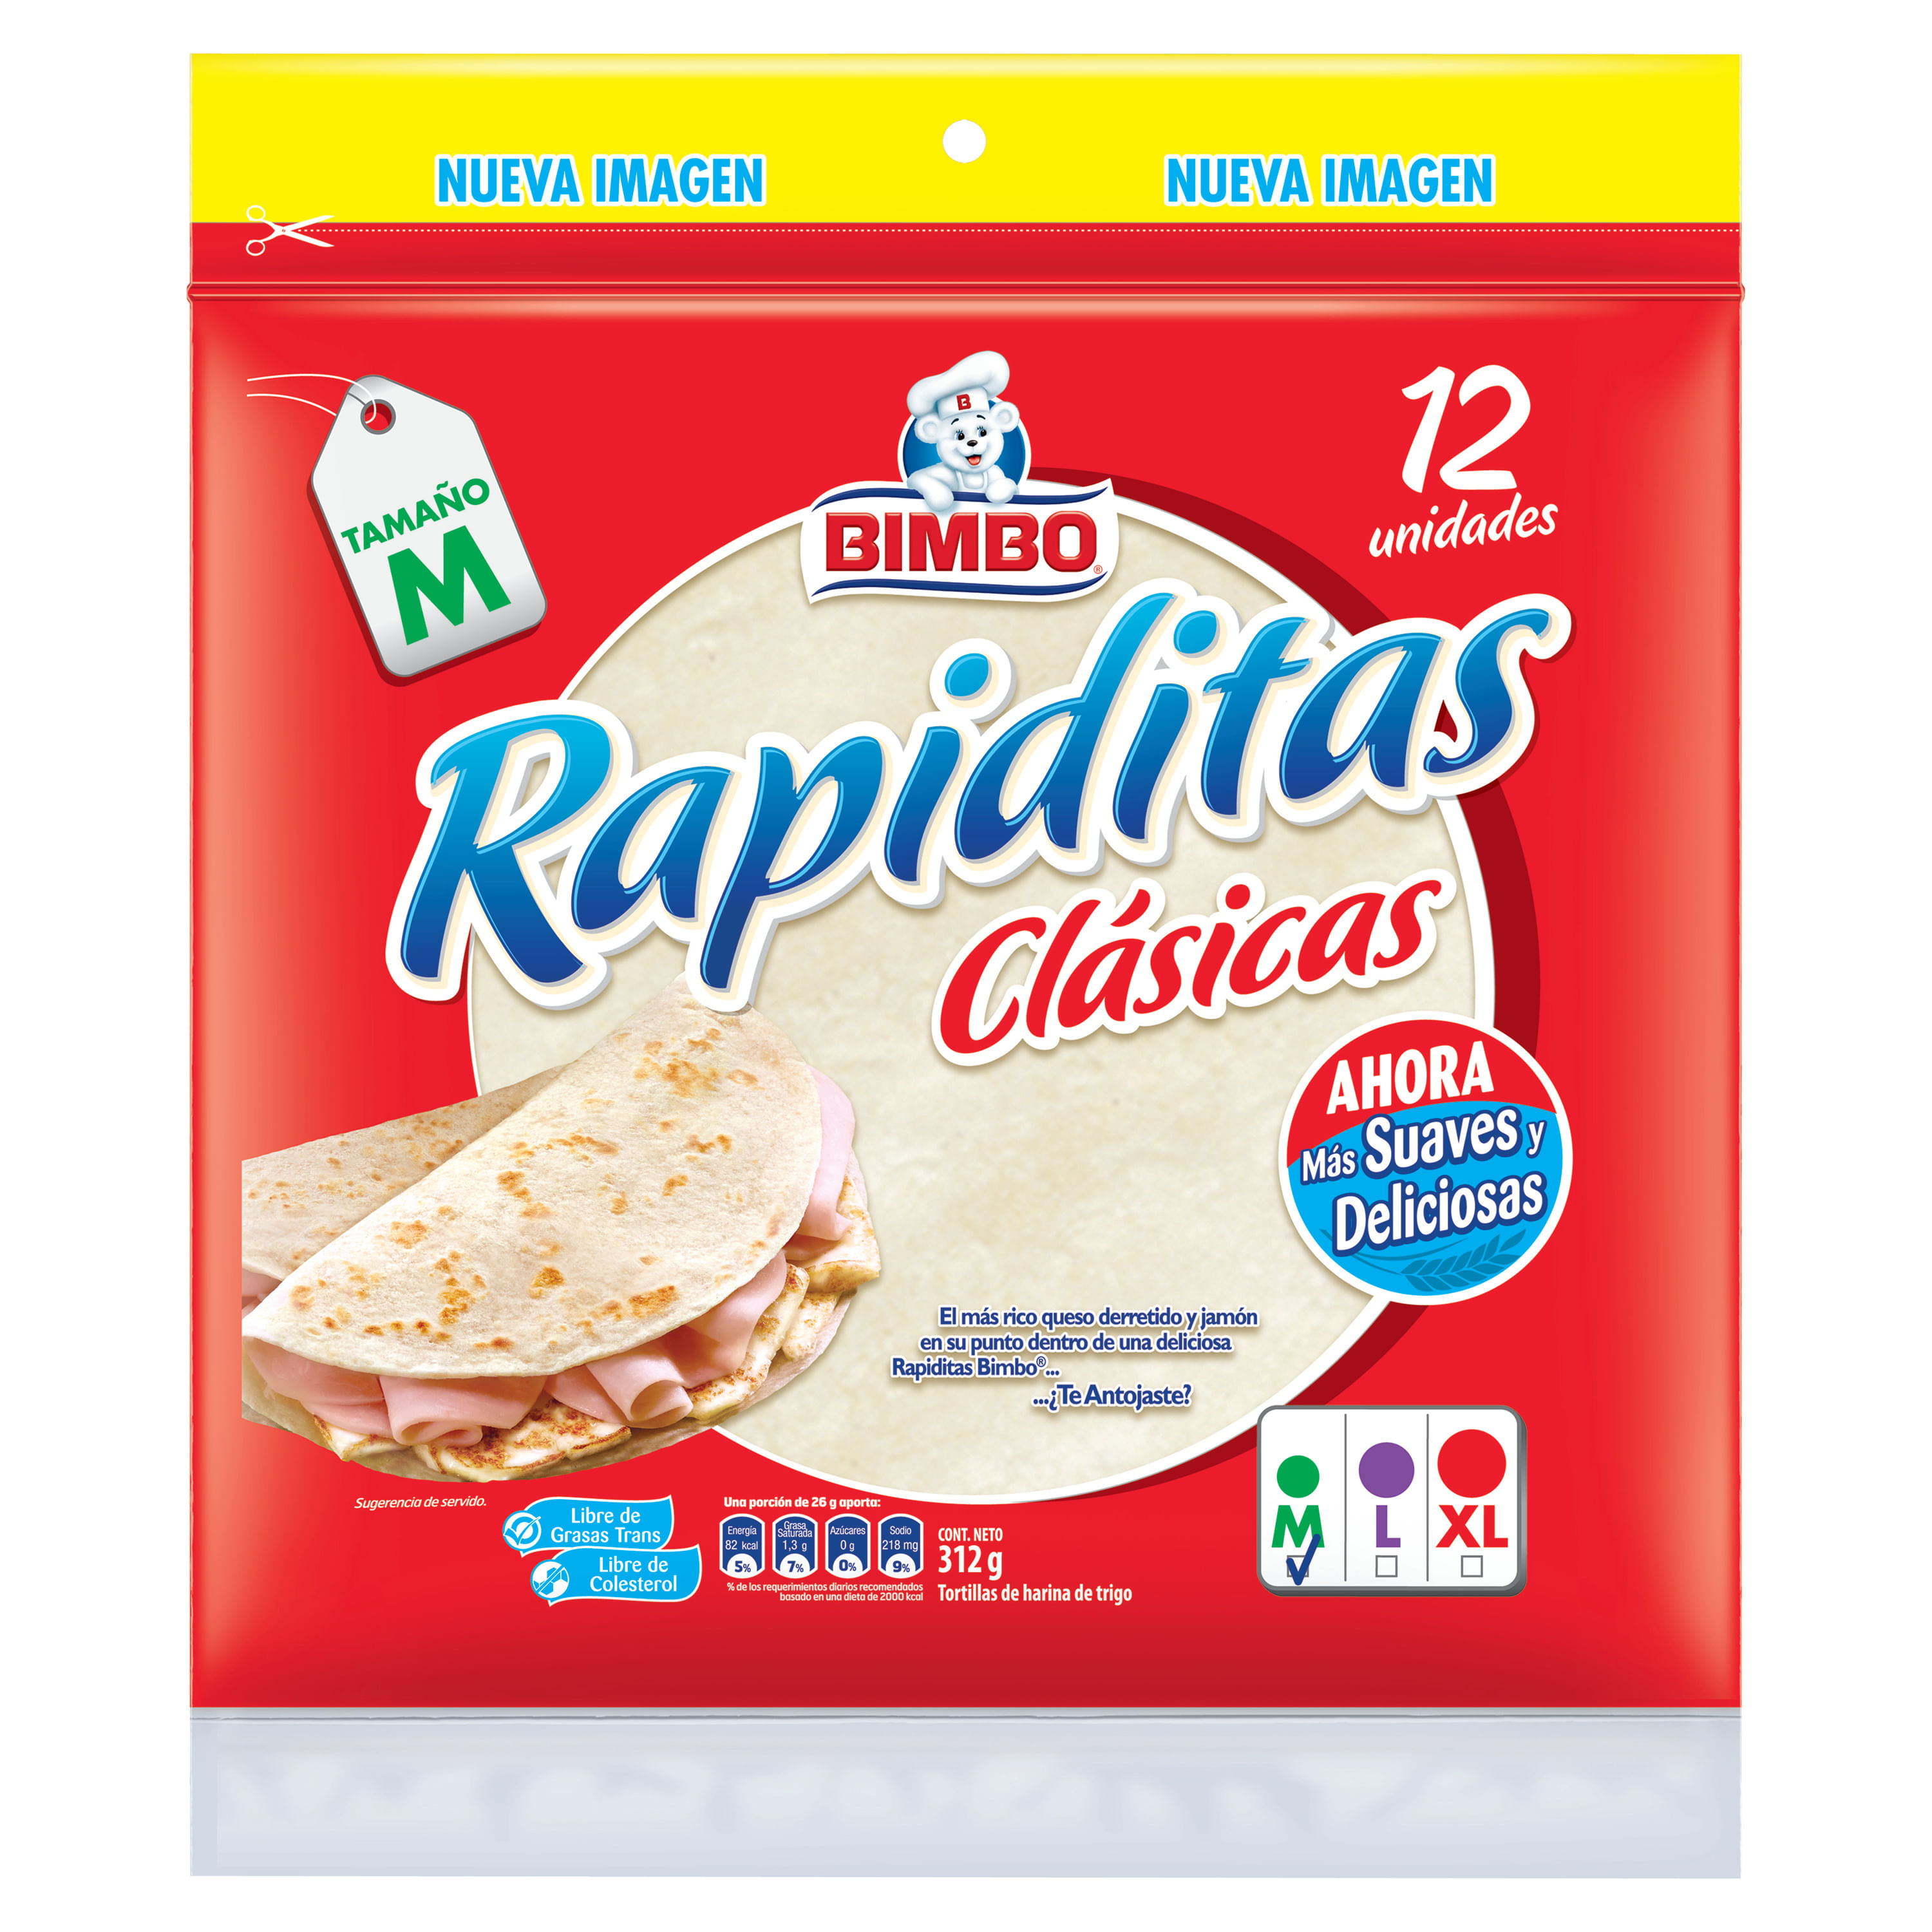 Tortilla-Bimbo-Harina-Trigo-Rapidita-Cl-sicas-12-Unidades-312gr-1-26899